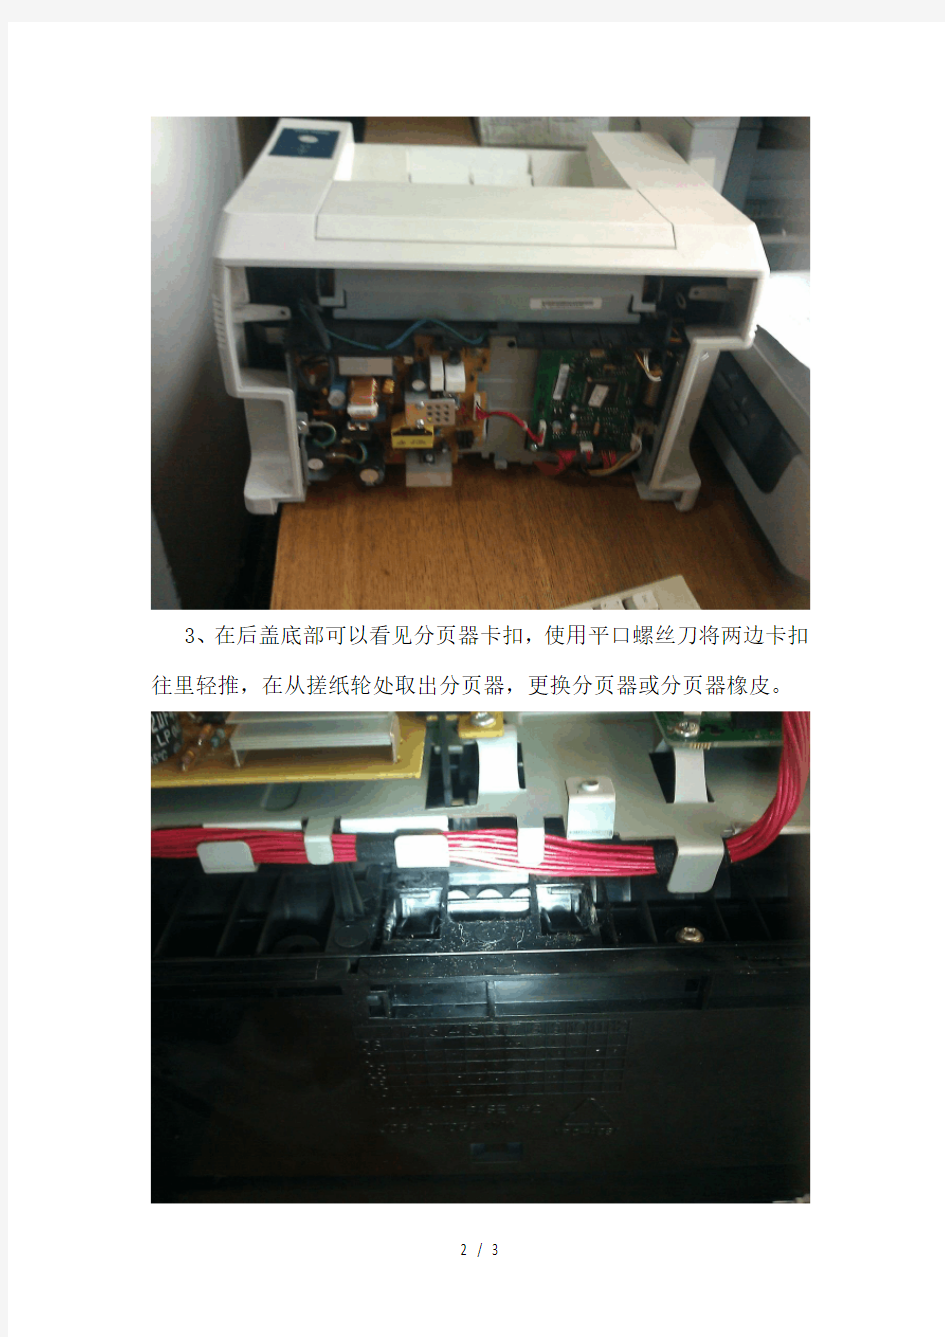 施乐3124打印机更换搓纸轮和分页器